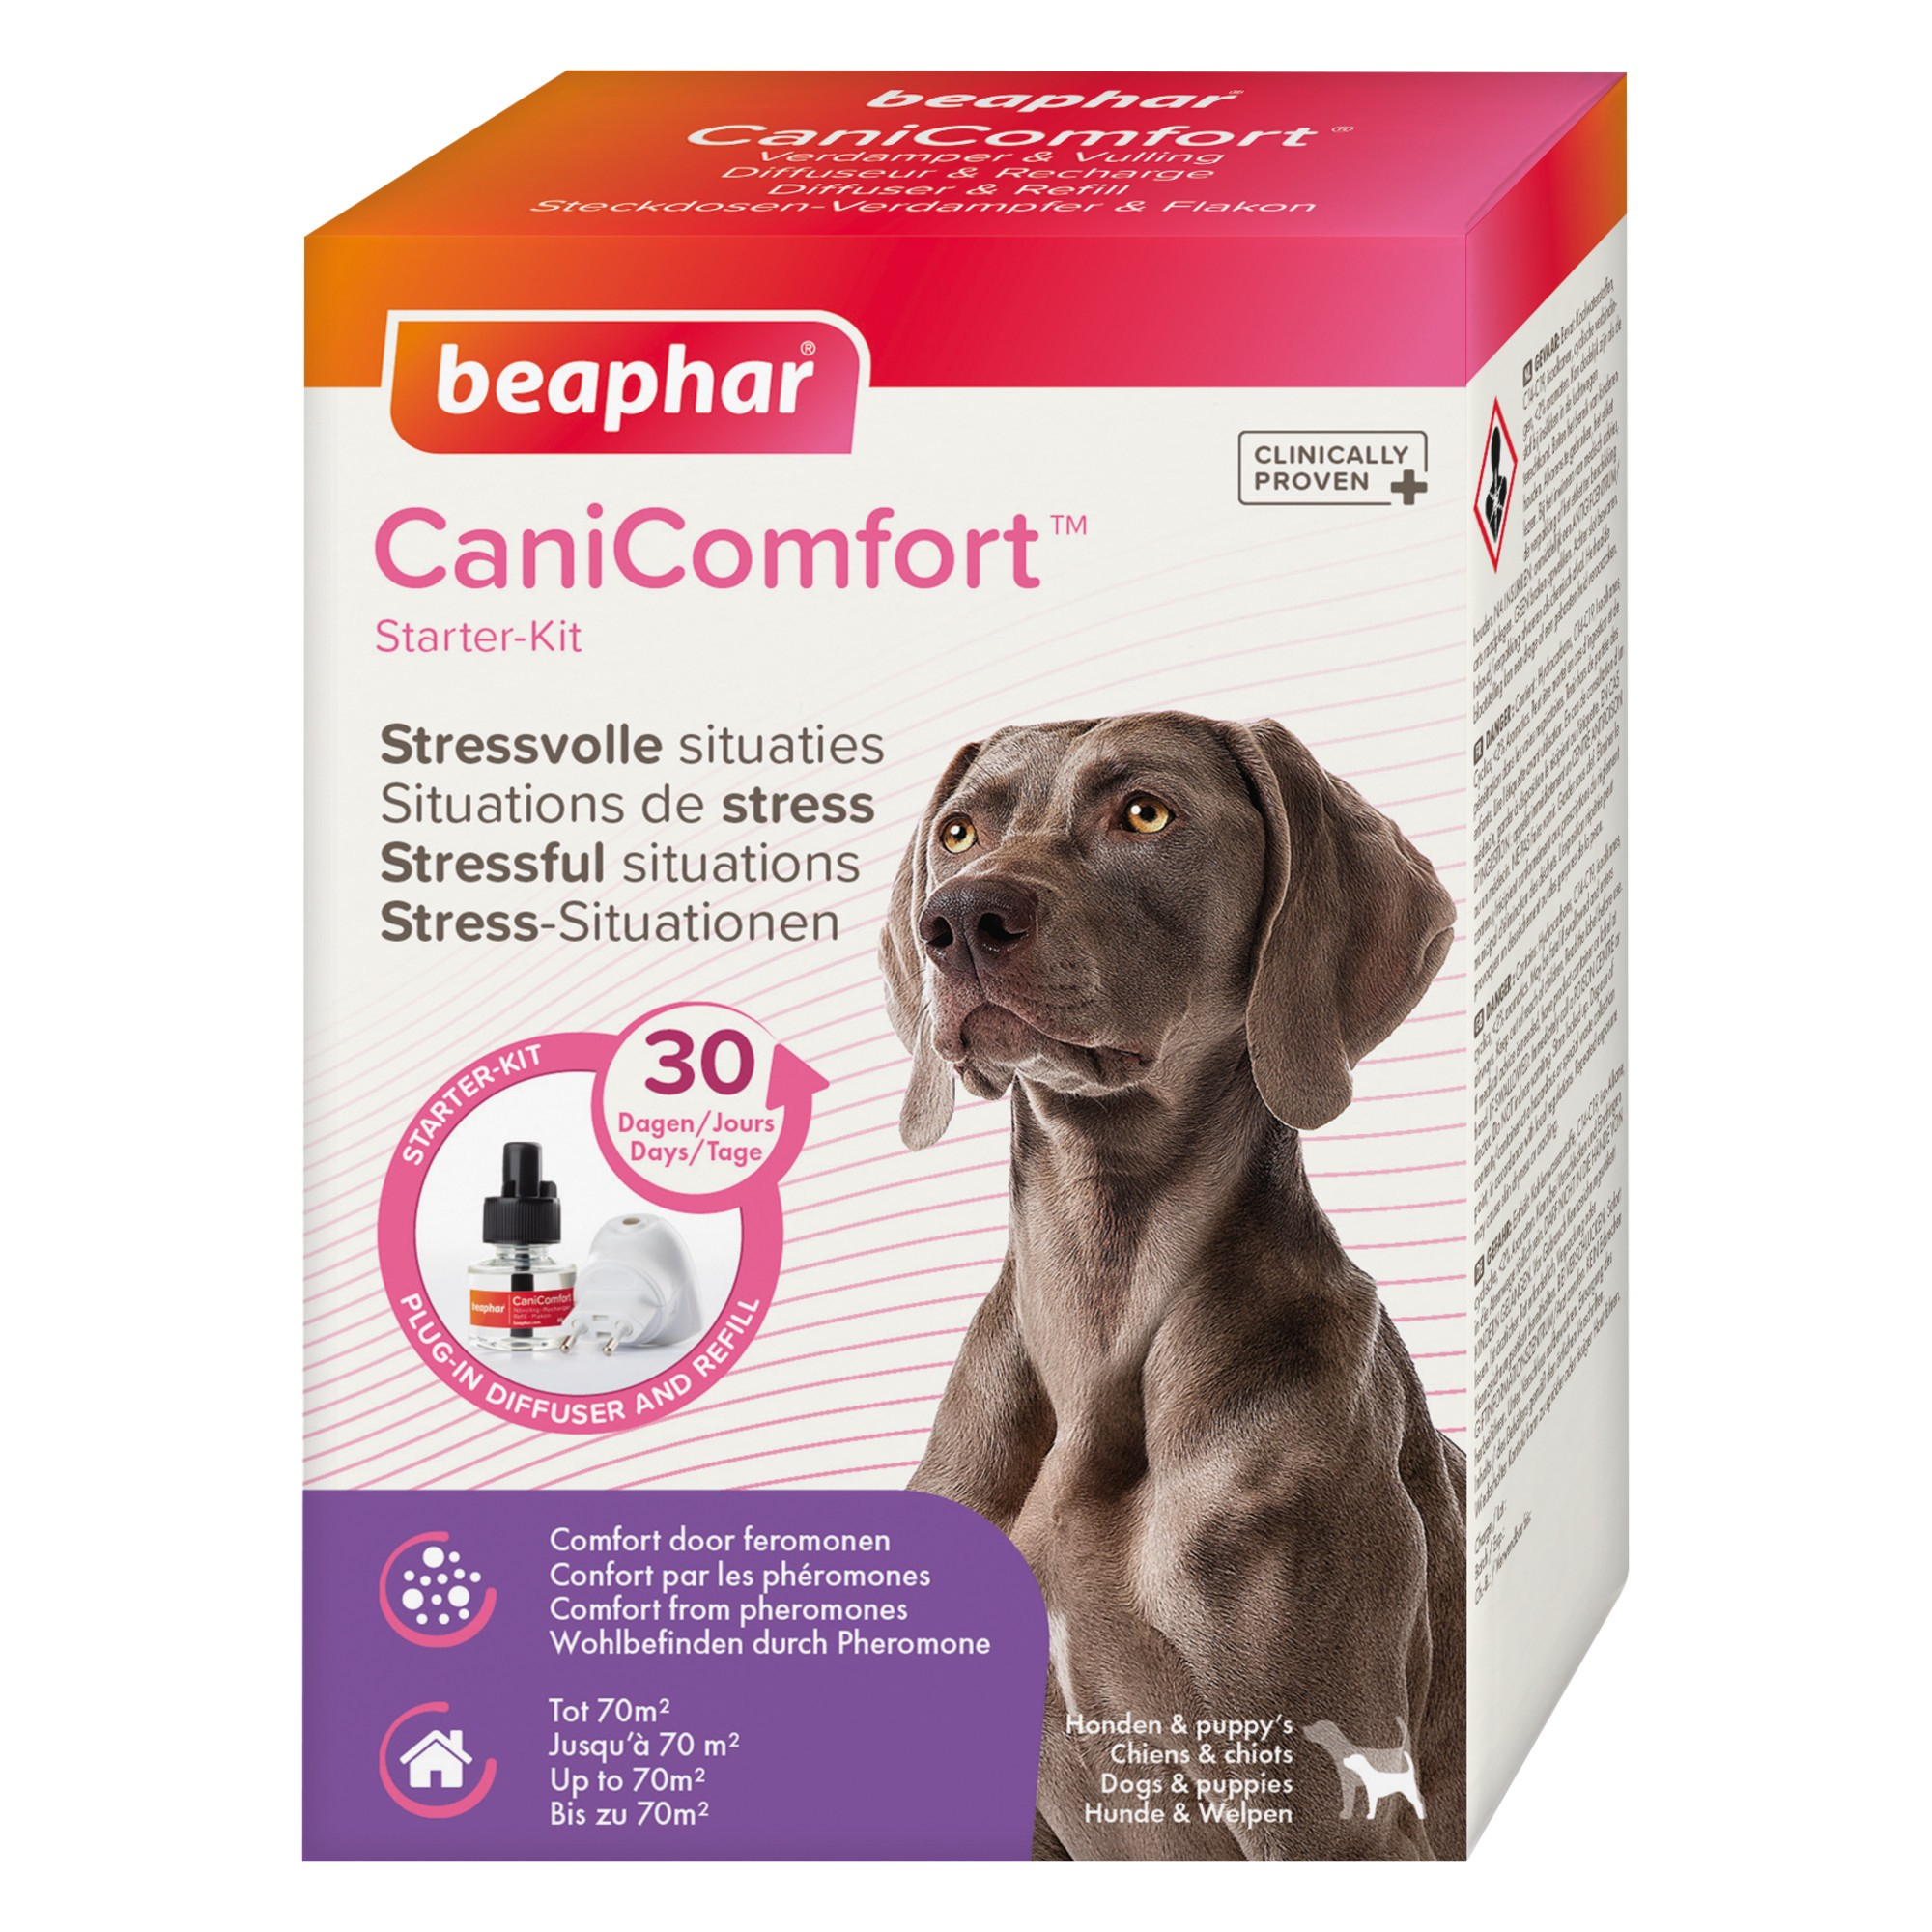 CaniComfort, Diffusor und Nachfüllung mit Pheromonen für Hunde und Katzen